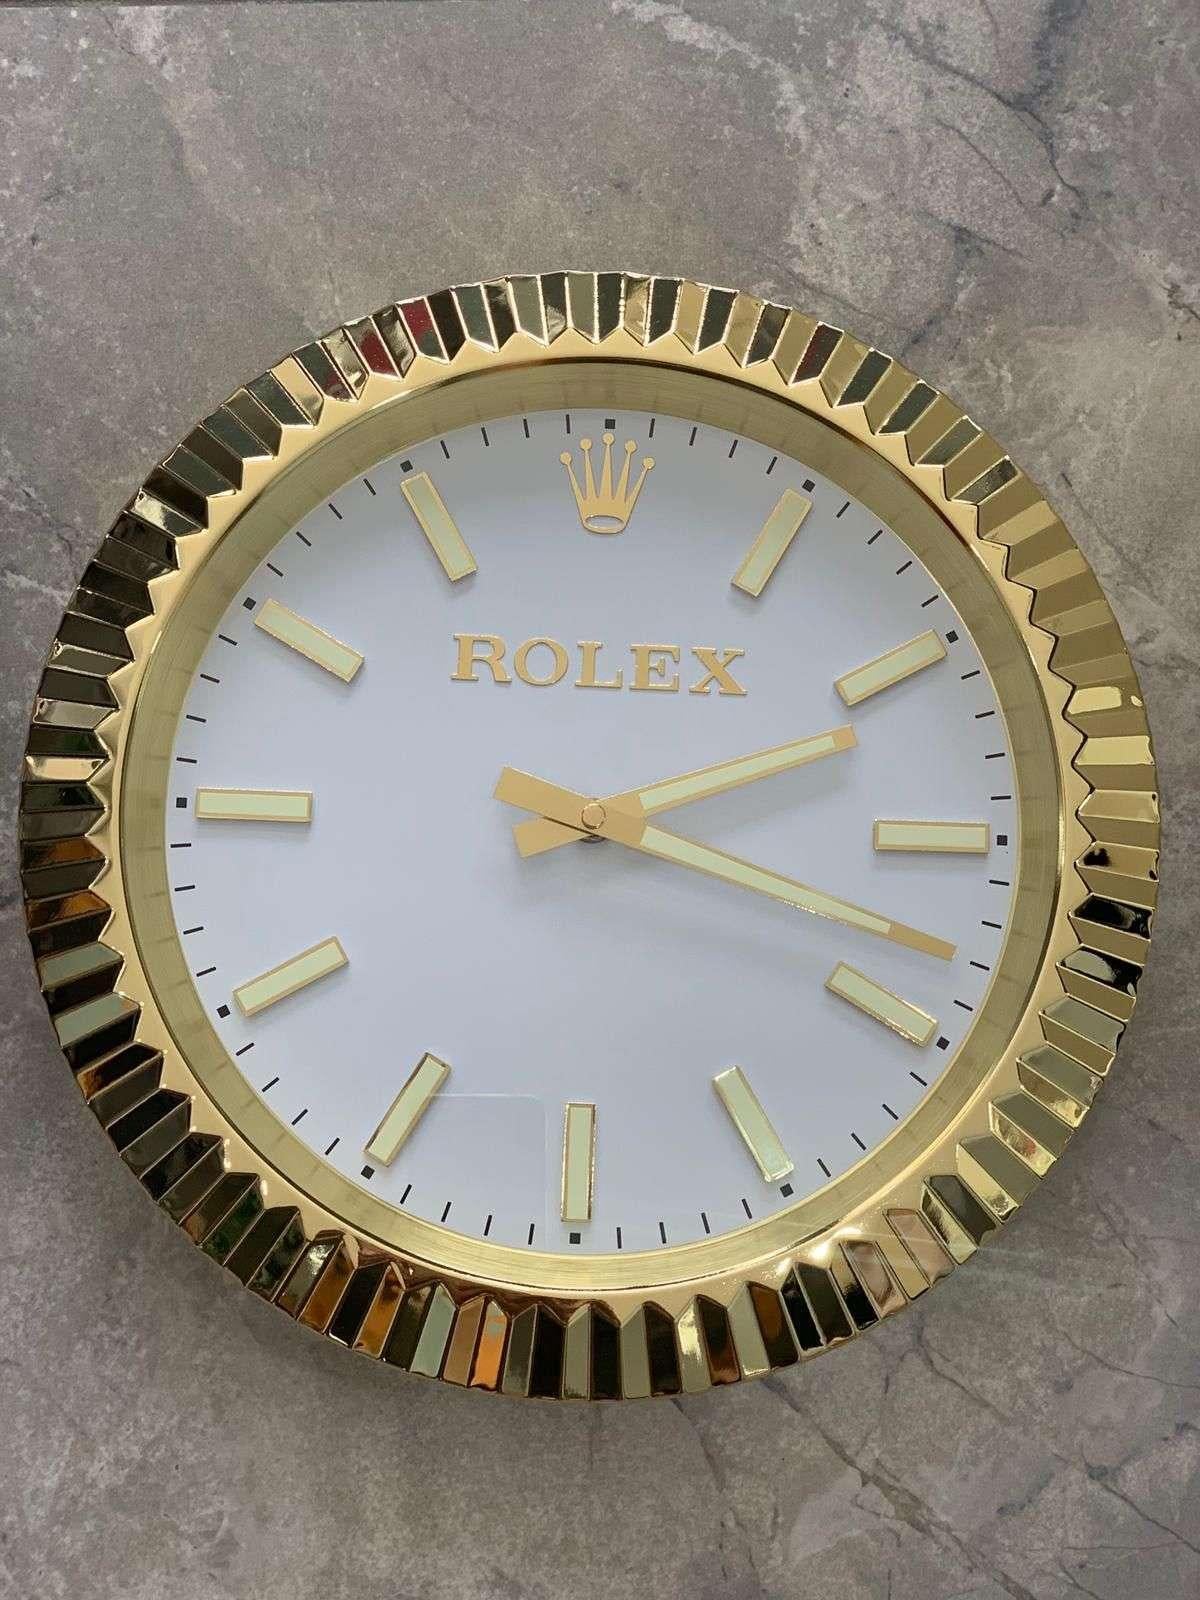 rolex dealer wall clock